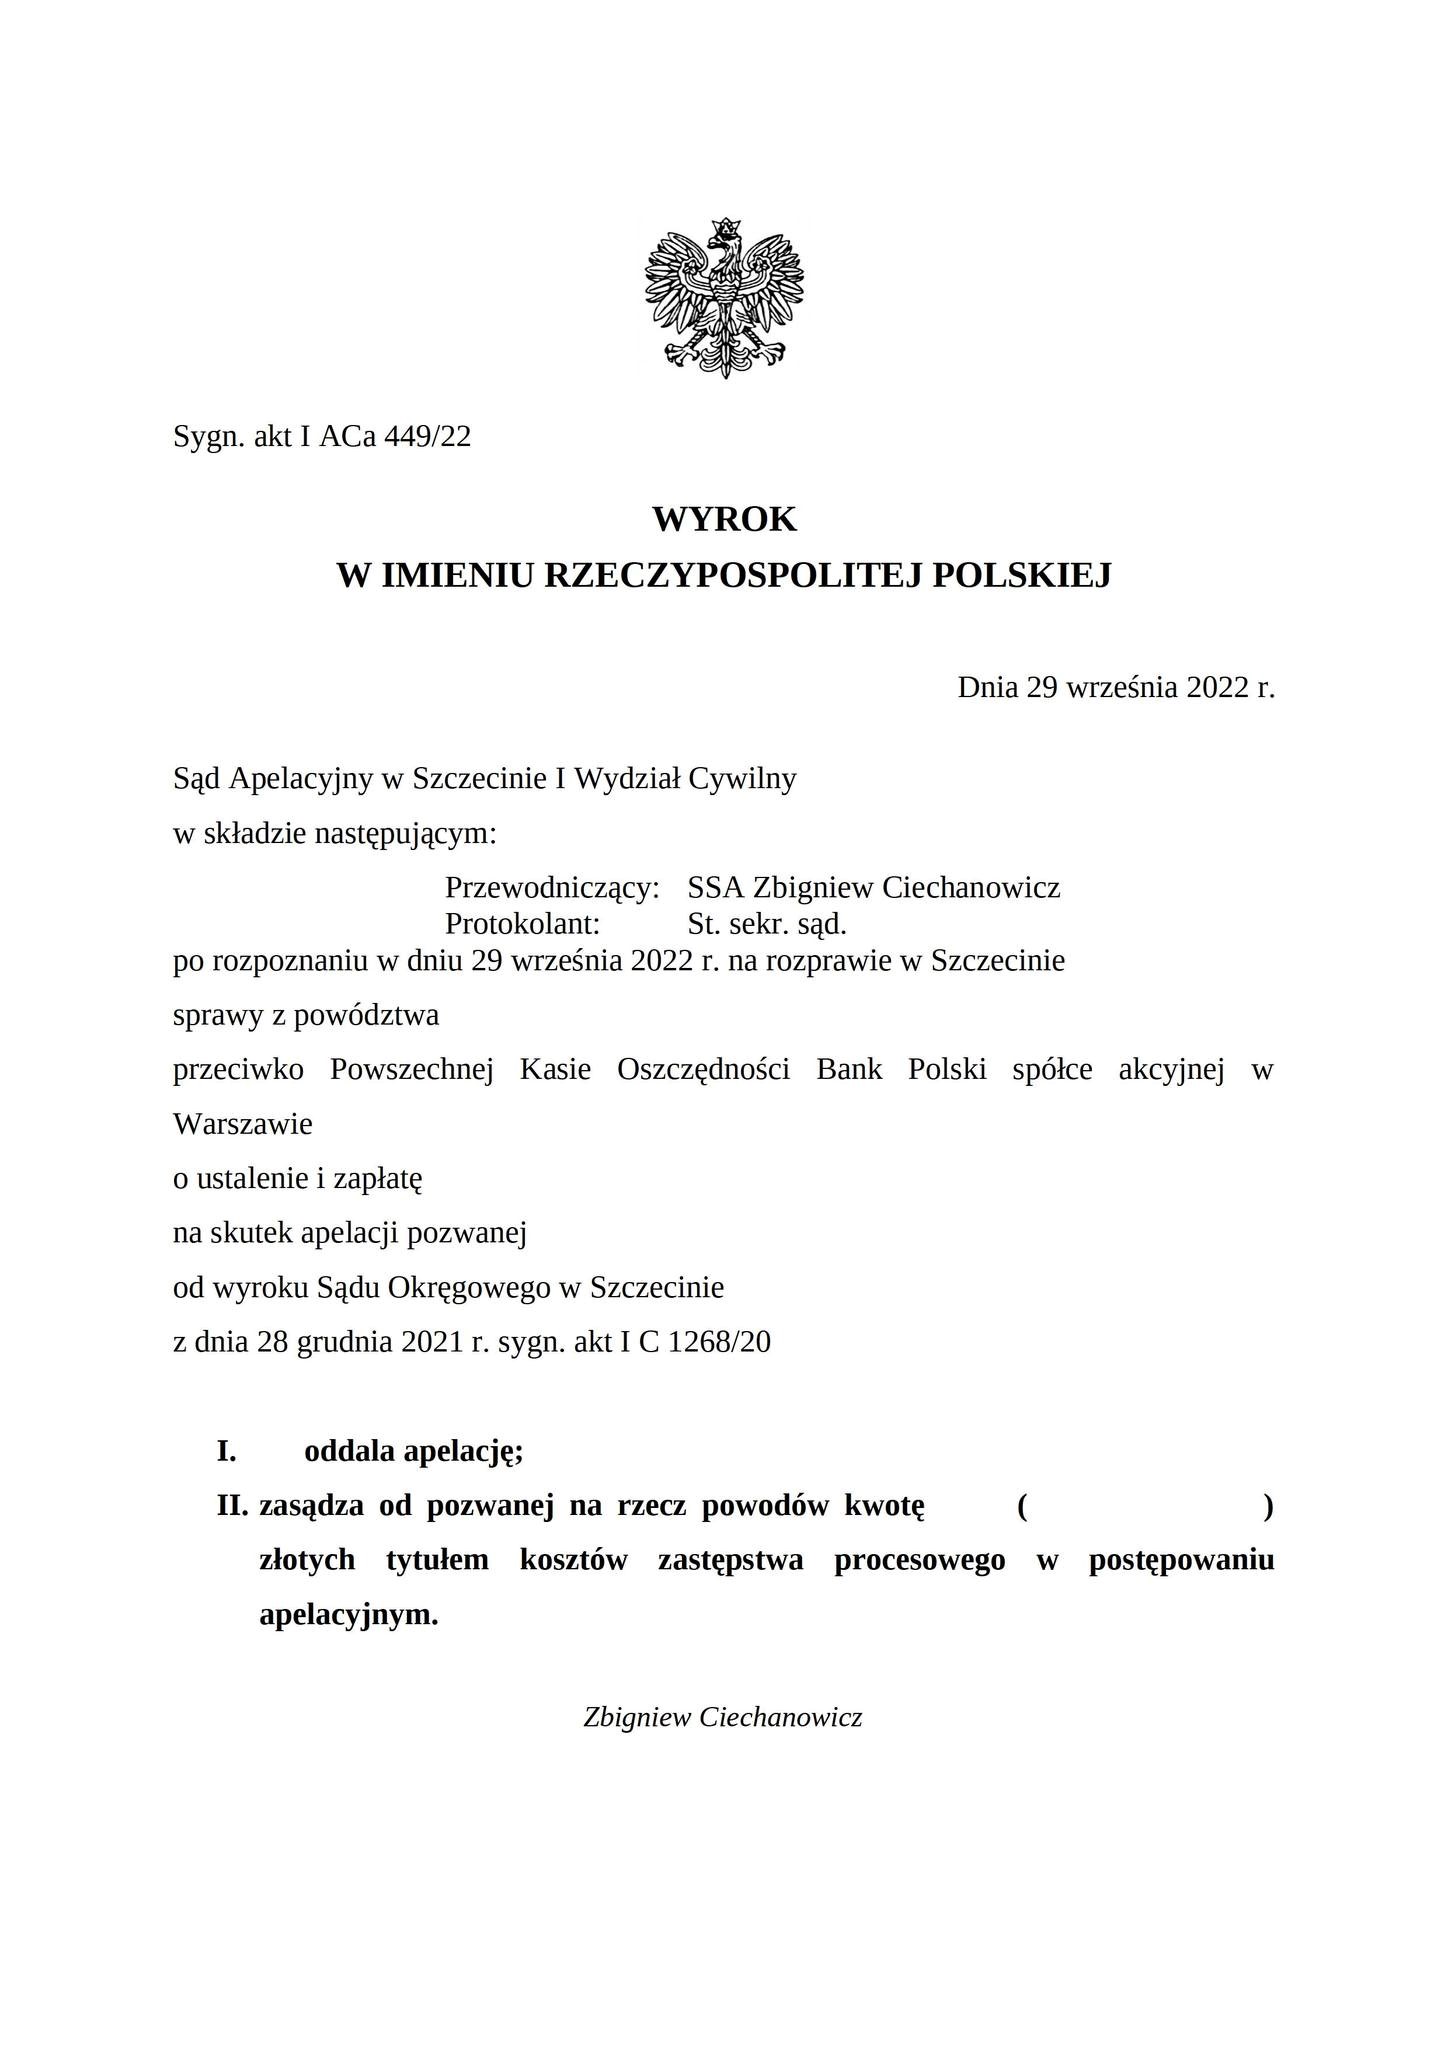 Wyrok Sądu Apelacyjnego w Szczecinie z dnia 29 września 2022 r., sygn. akt I ACa 449/22 